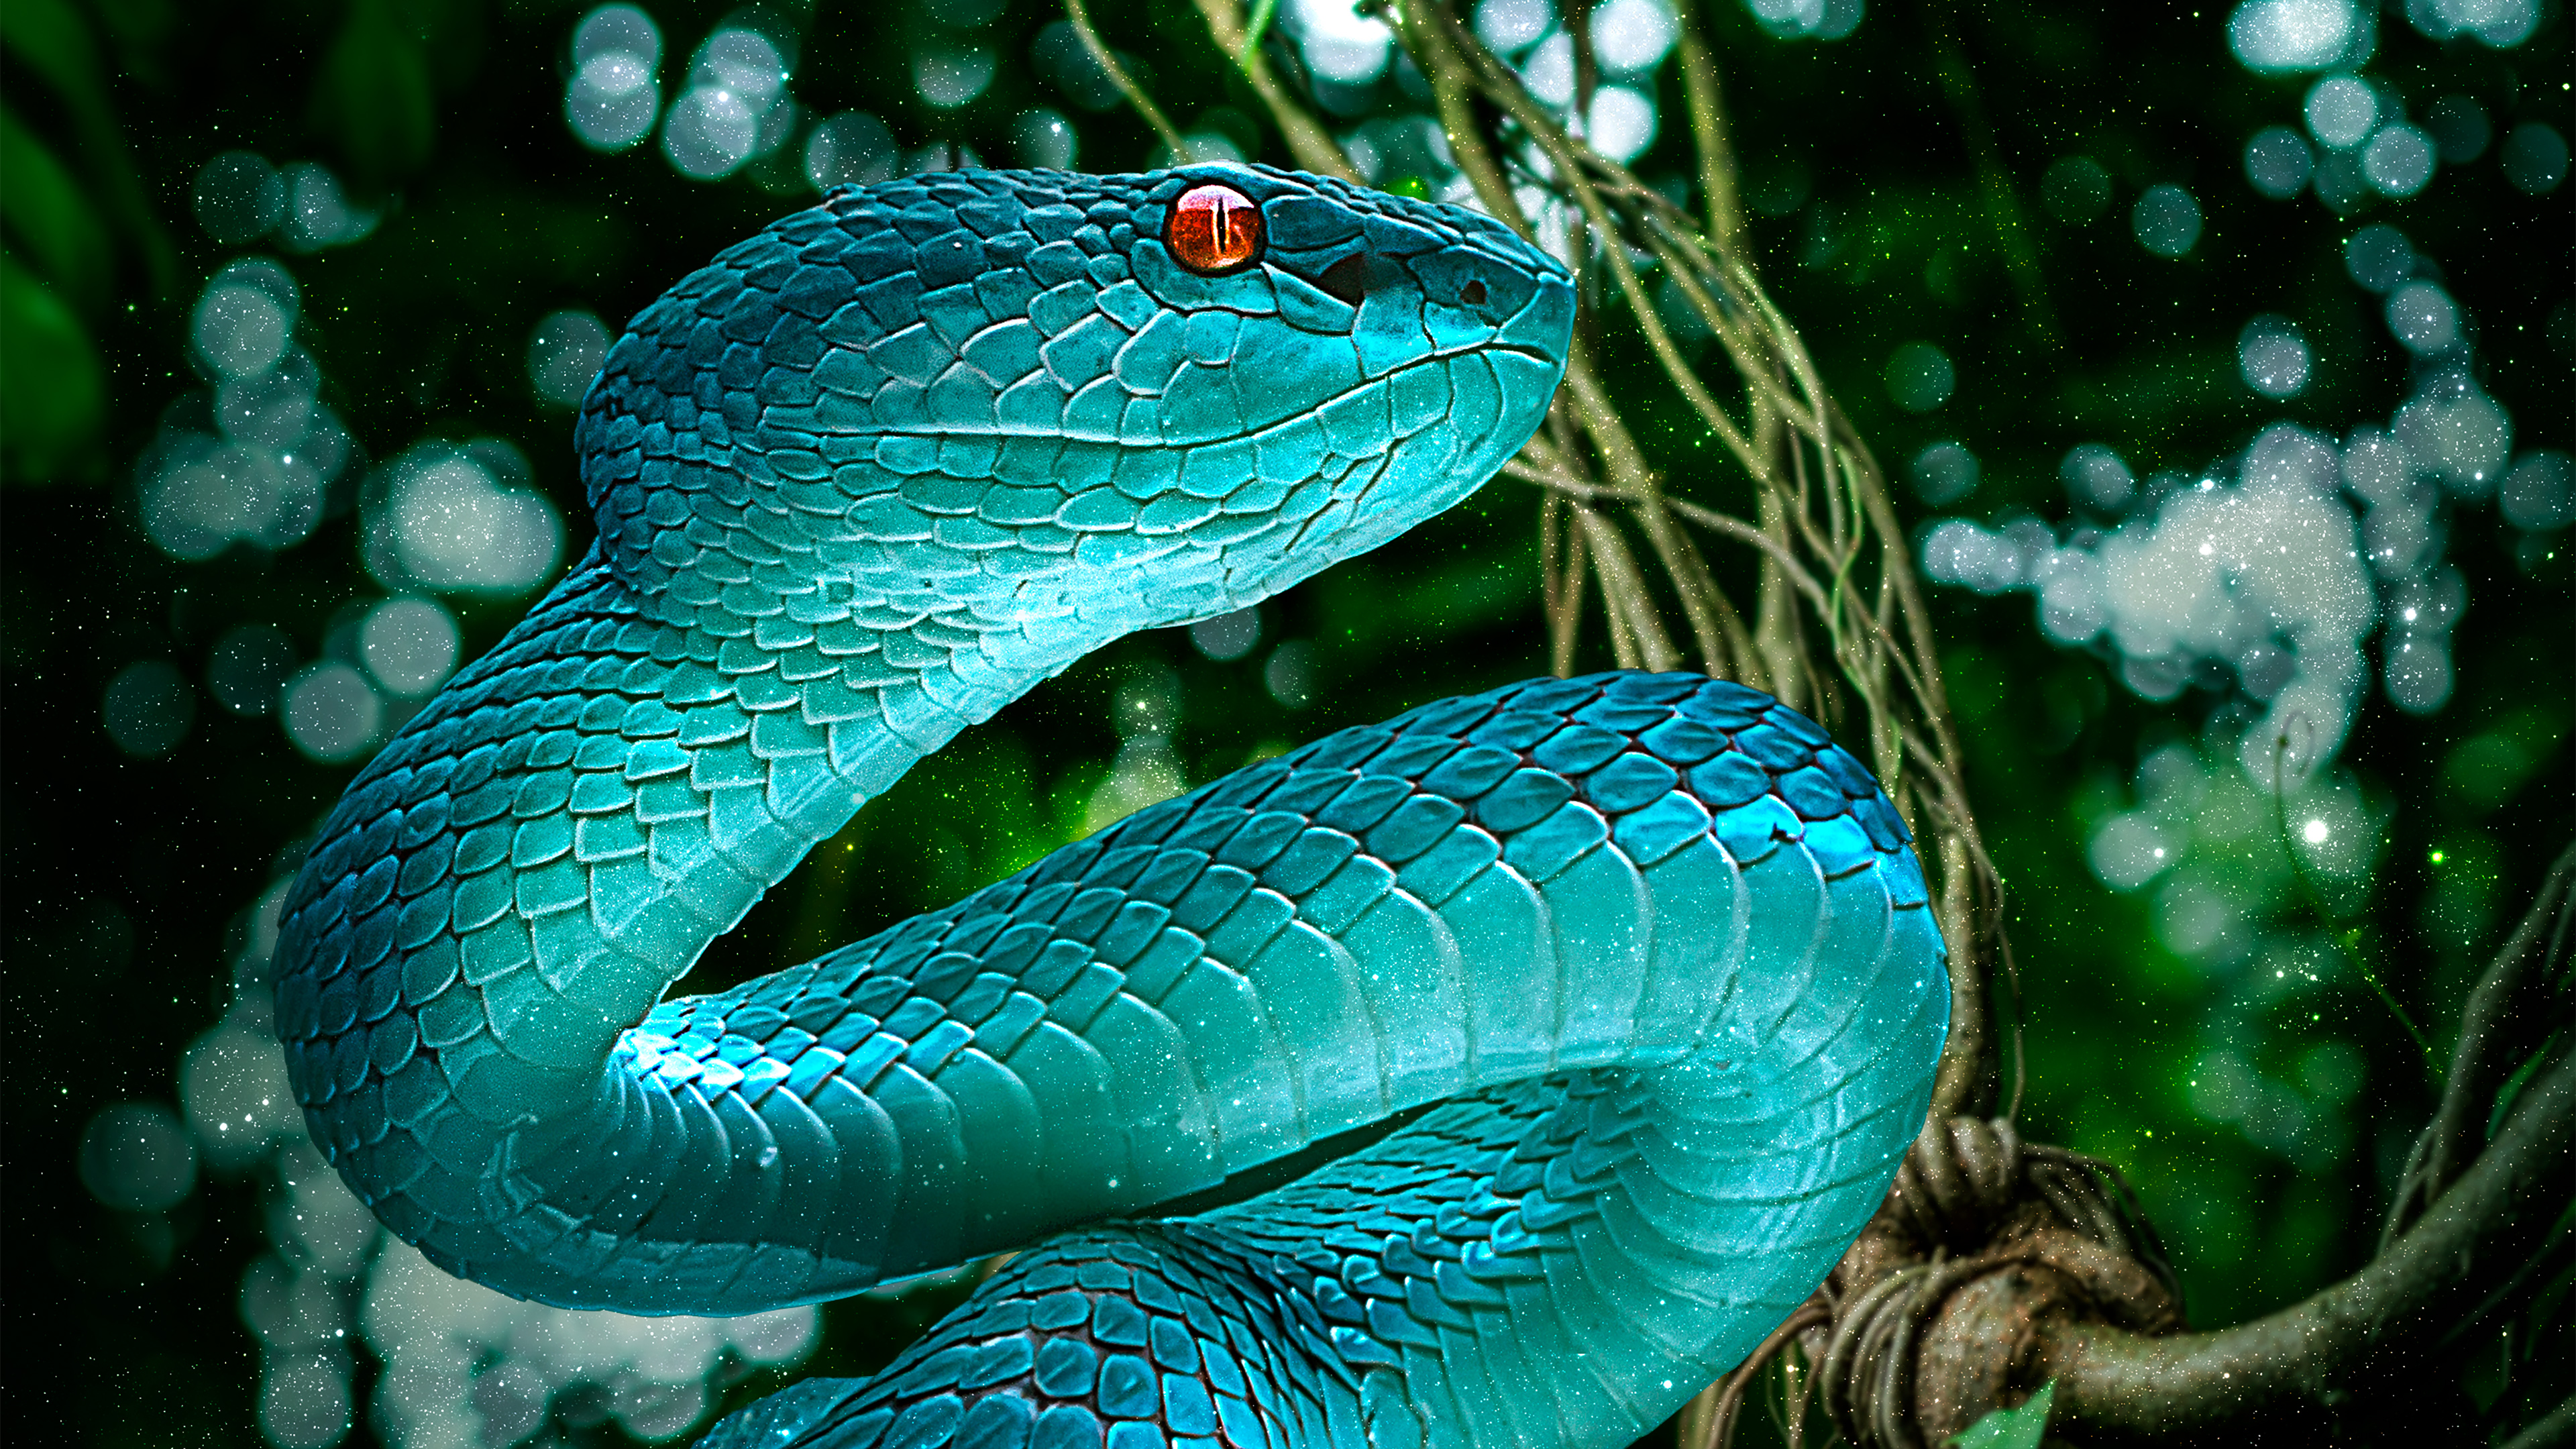 Blue Snake 4k - Snake 4k - 3840x2160 Wallpaper 